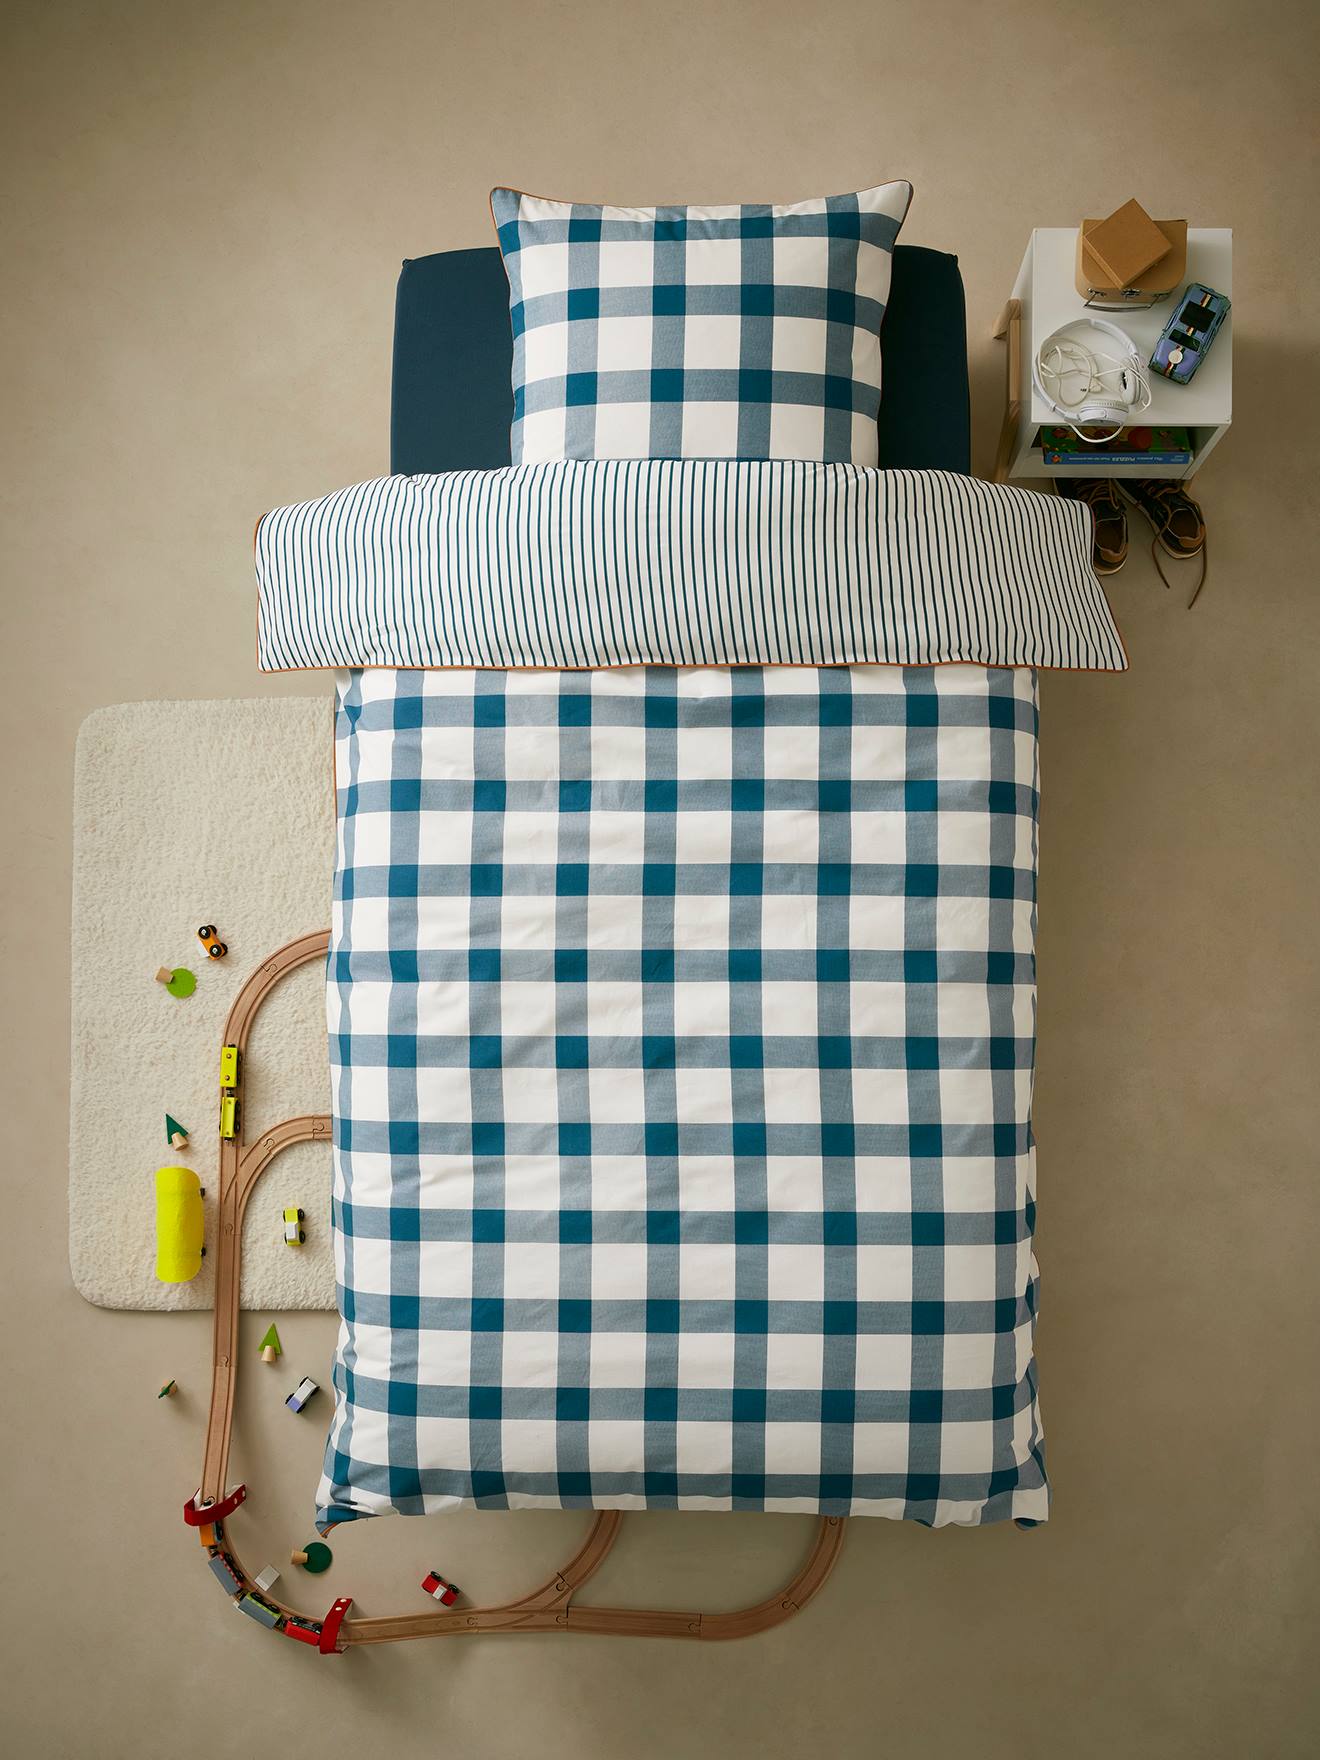 Children’s Duvet Cover + Pillowcase Set, Checks blue dark all over printed